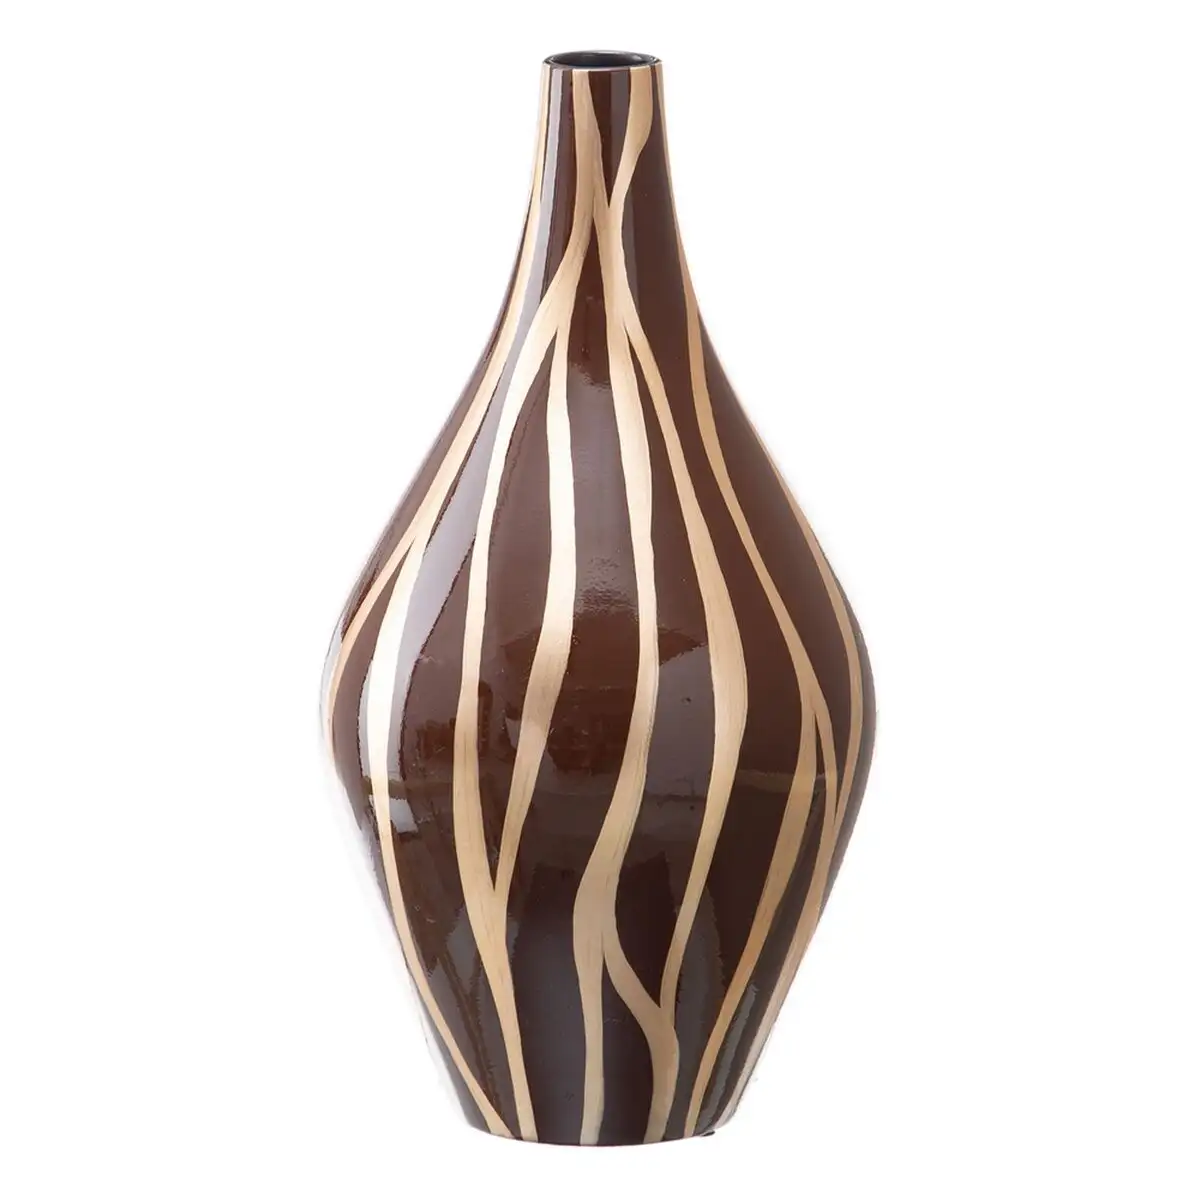 Vase zebre ceramique dore marron 23 x 23 x 43 cm_6402. Plongez dans l'Univers de DIAYTAR SENEGAL - Où la Qualité et la Diversité se rencontrent. Parcourez nos rayons virtuels pour trouver des produits répondant à tous les besoins, du confort de votre foyer.